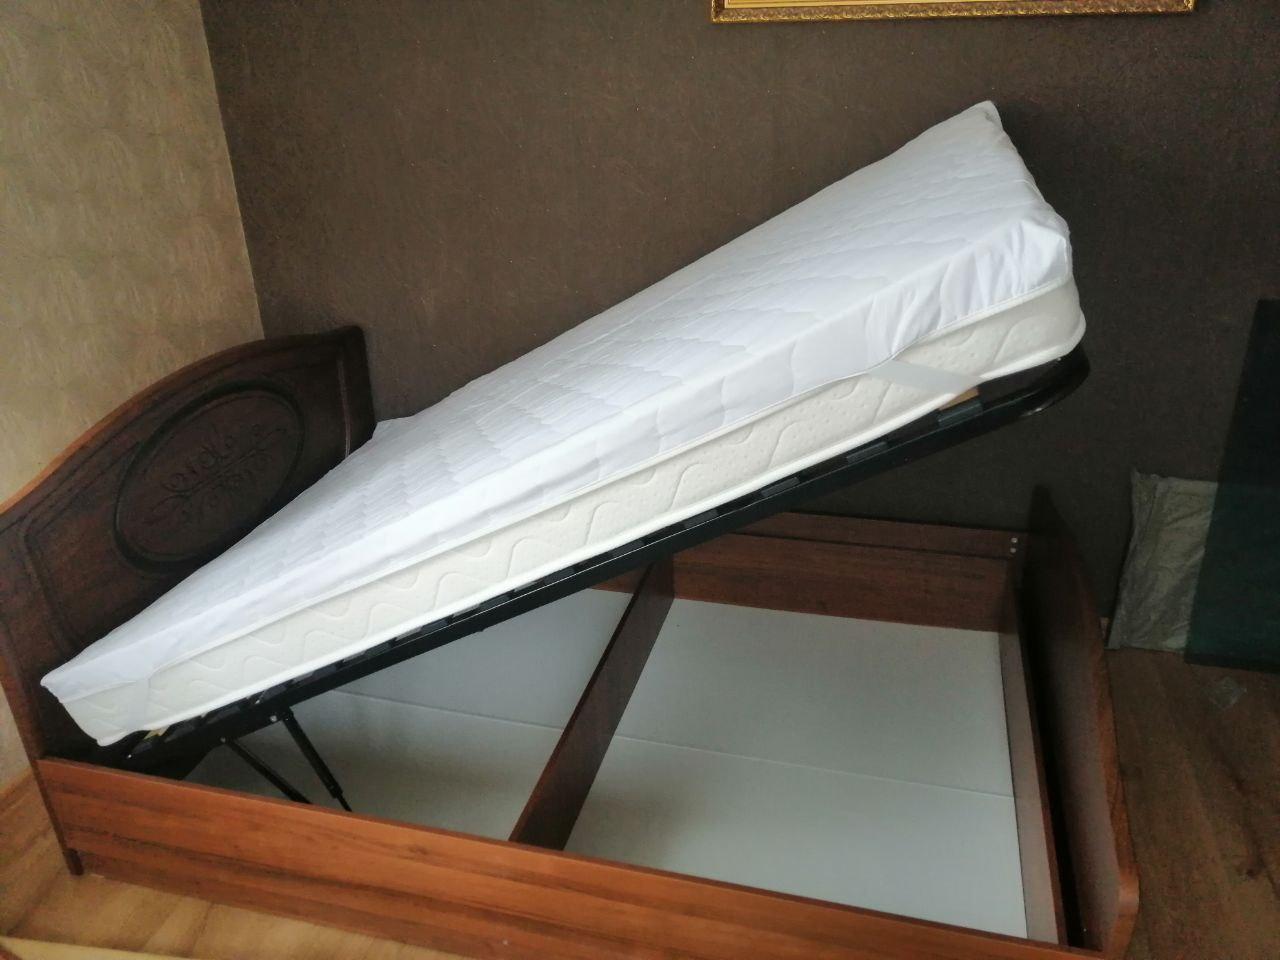 Полутораспальная кровать "Натали"  120 х 200 с подъемным механизмом цвет орех изножье высокое